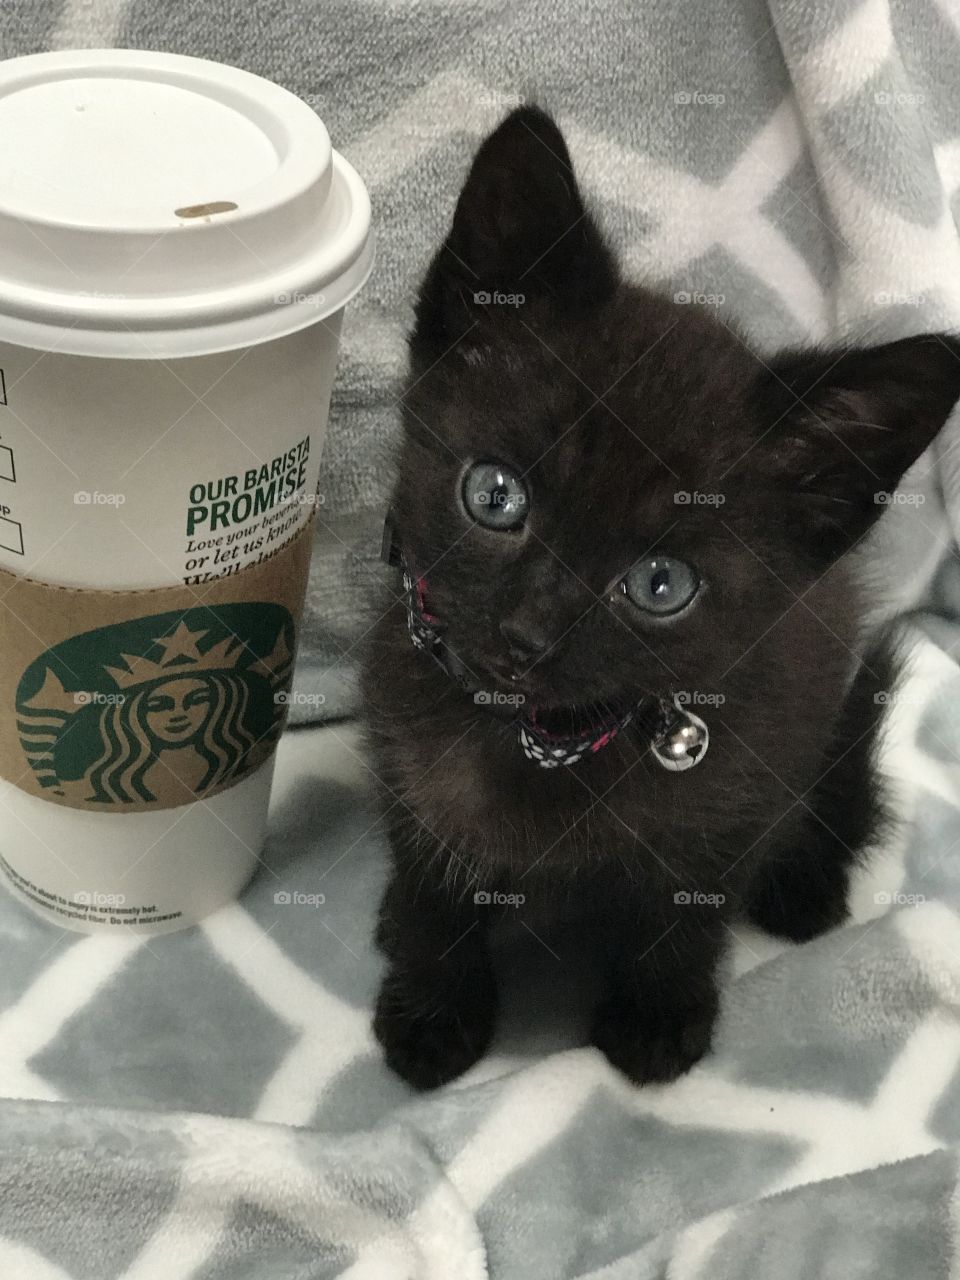 Starbucks kitty